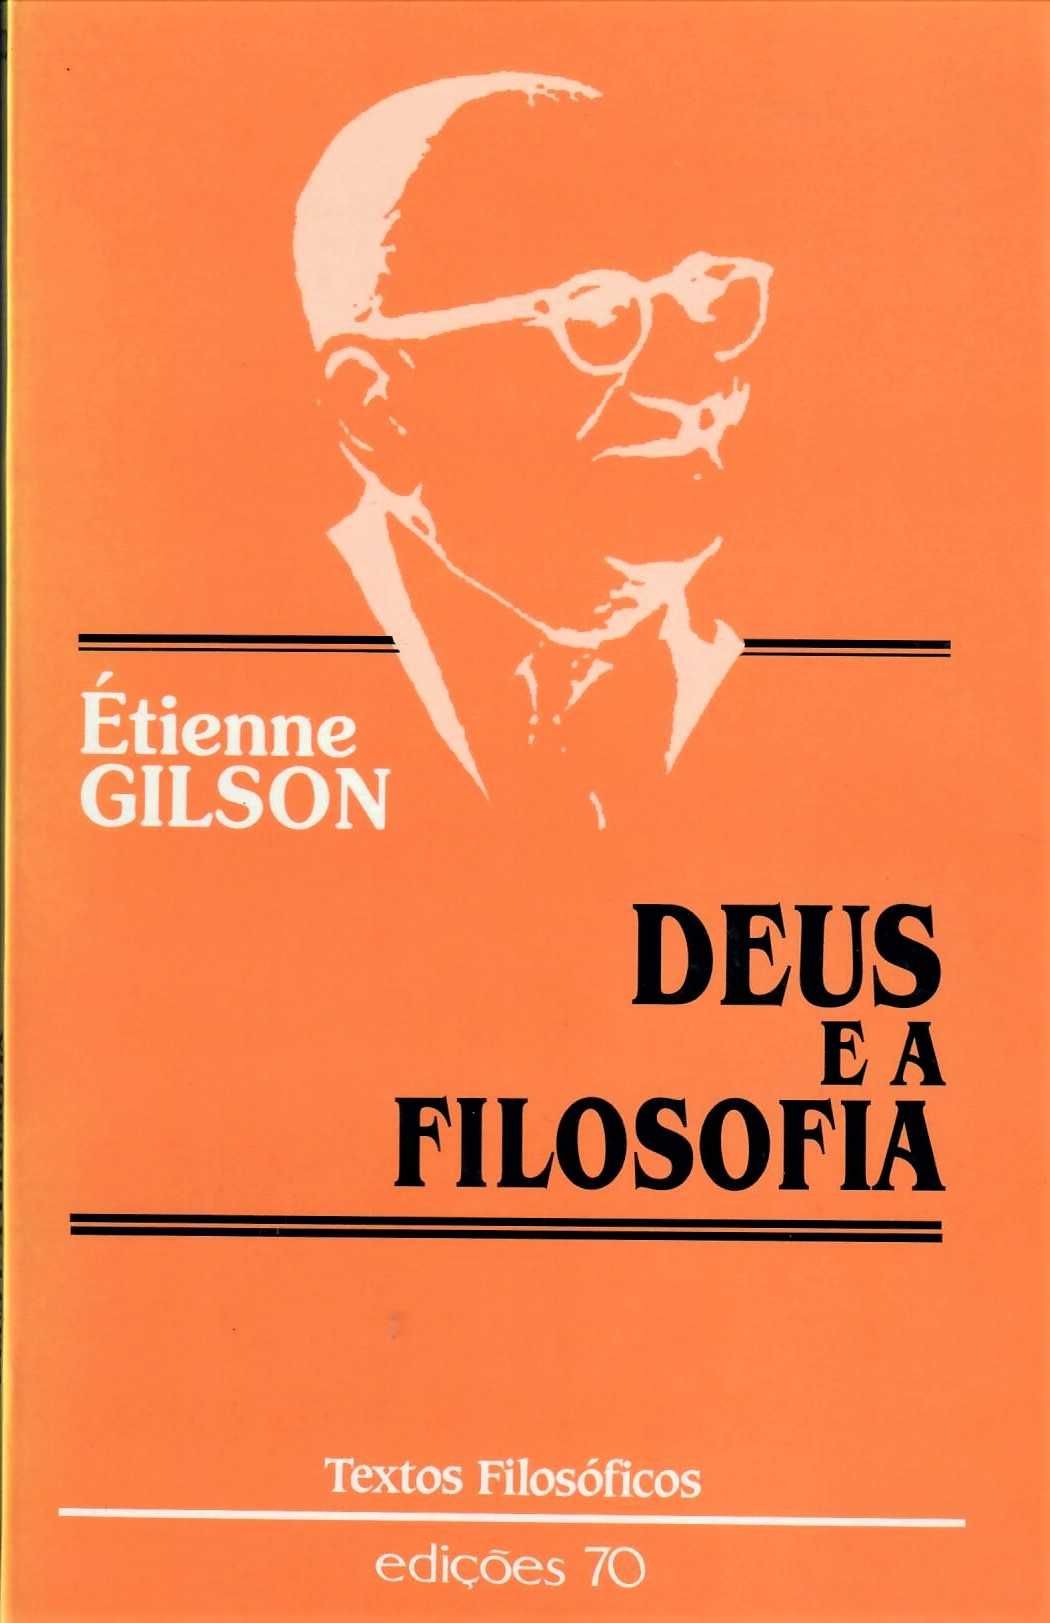 Étienne Gilson «Deus e a Filosofia»